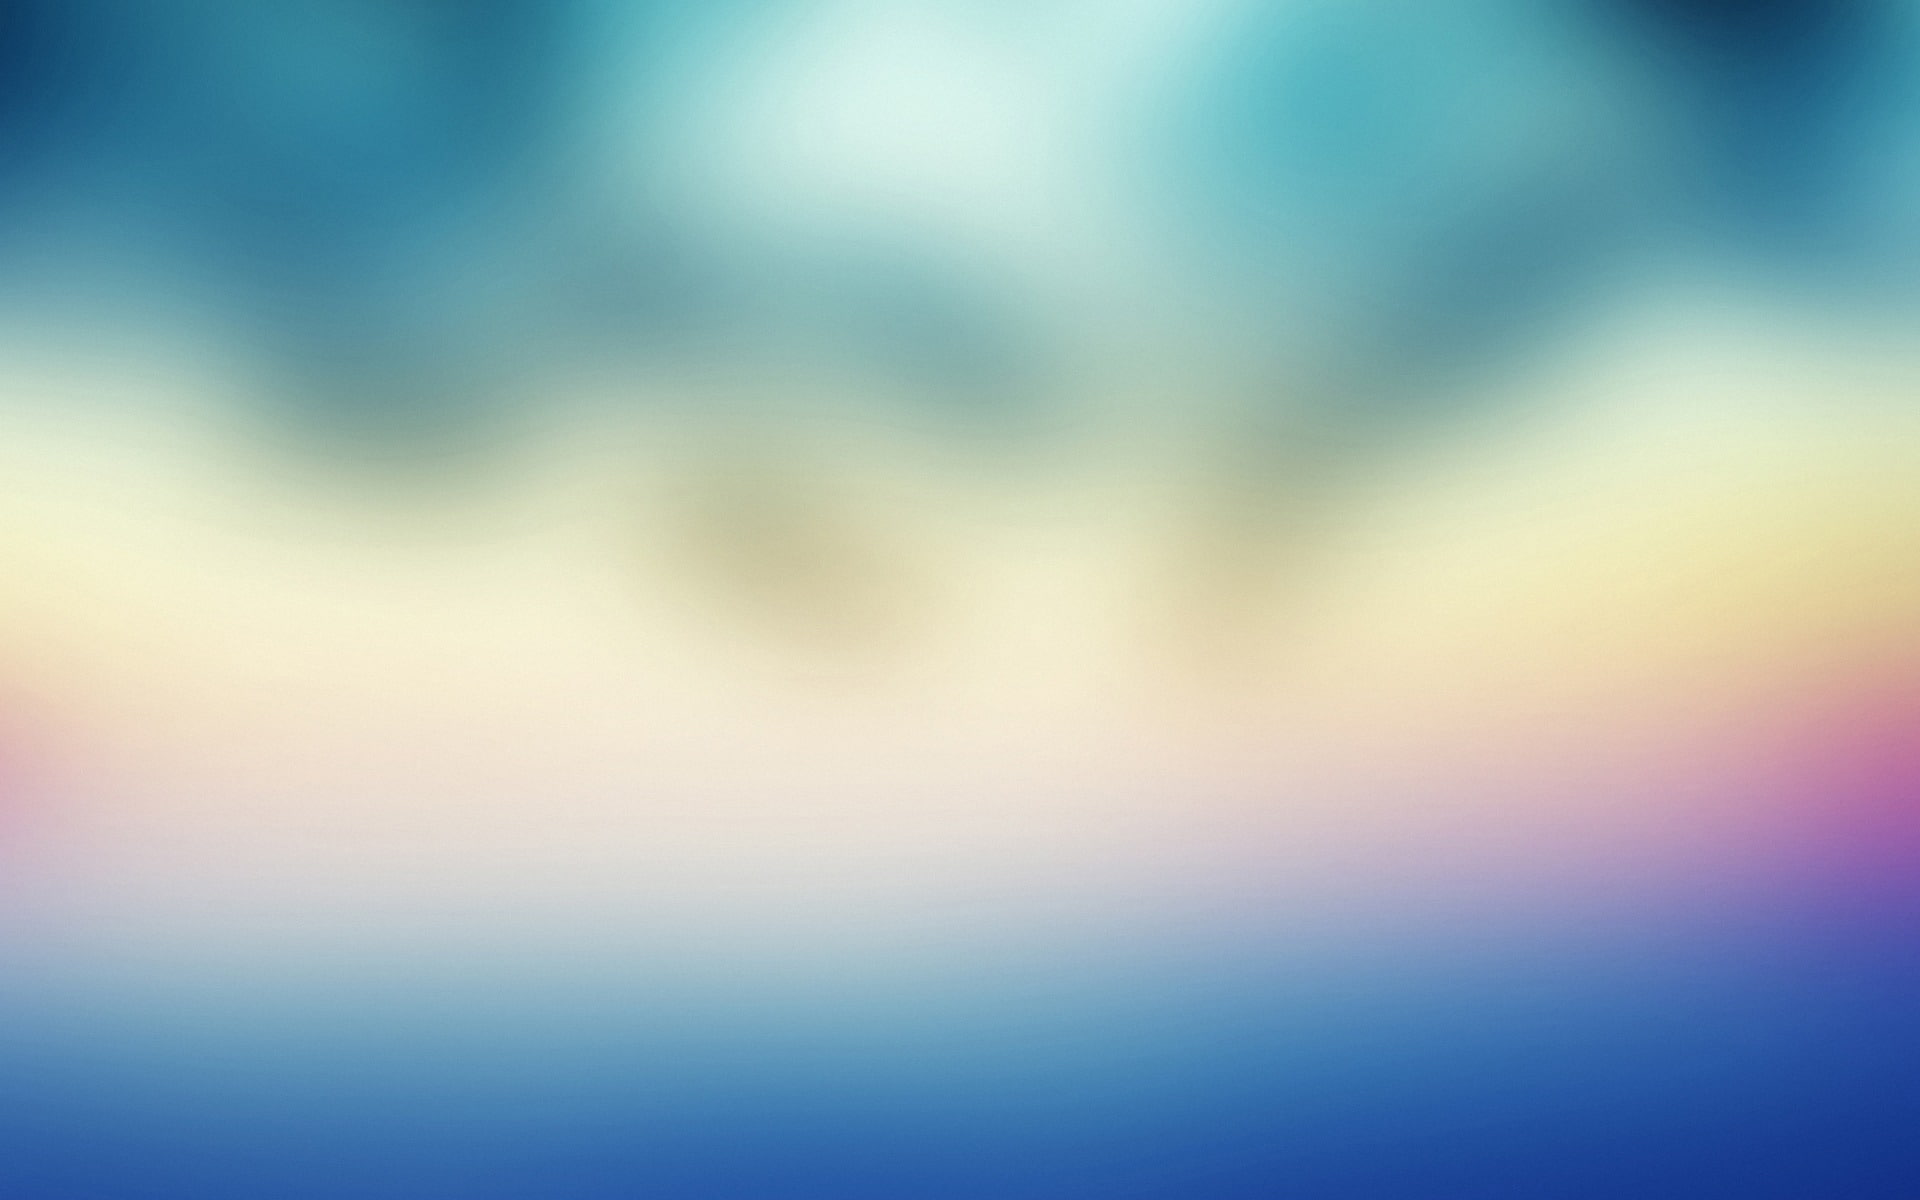 Abstract gaussian blur-Design Desktop Wallpaper, backgrounds